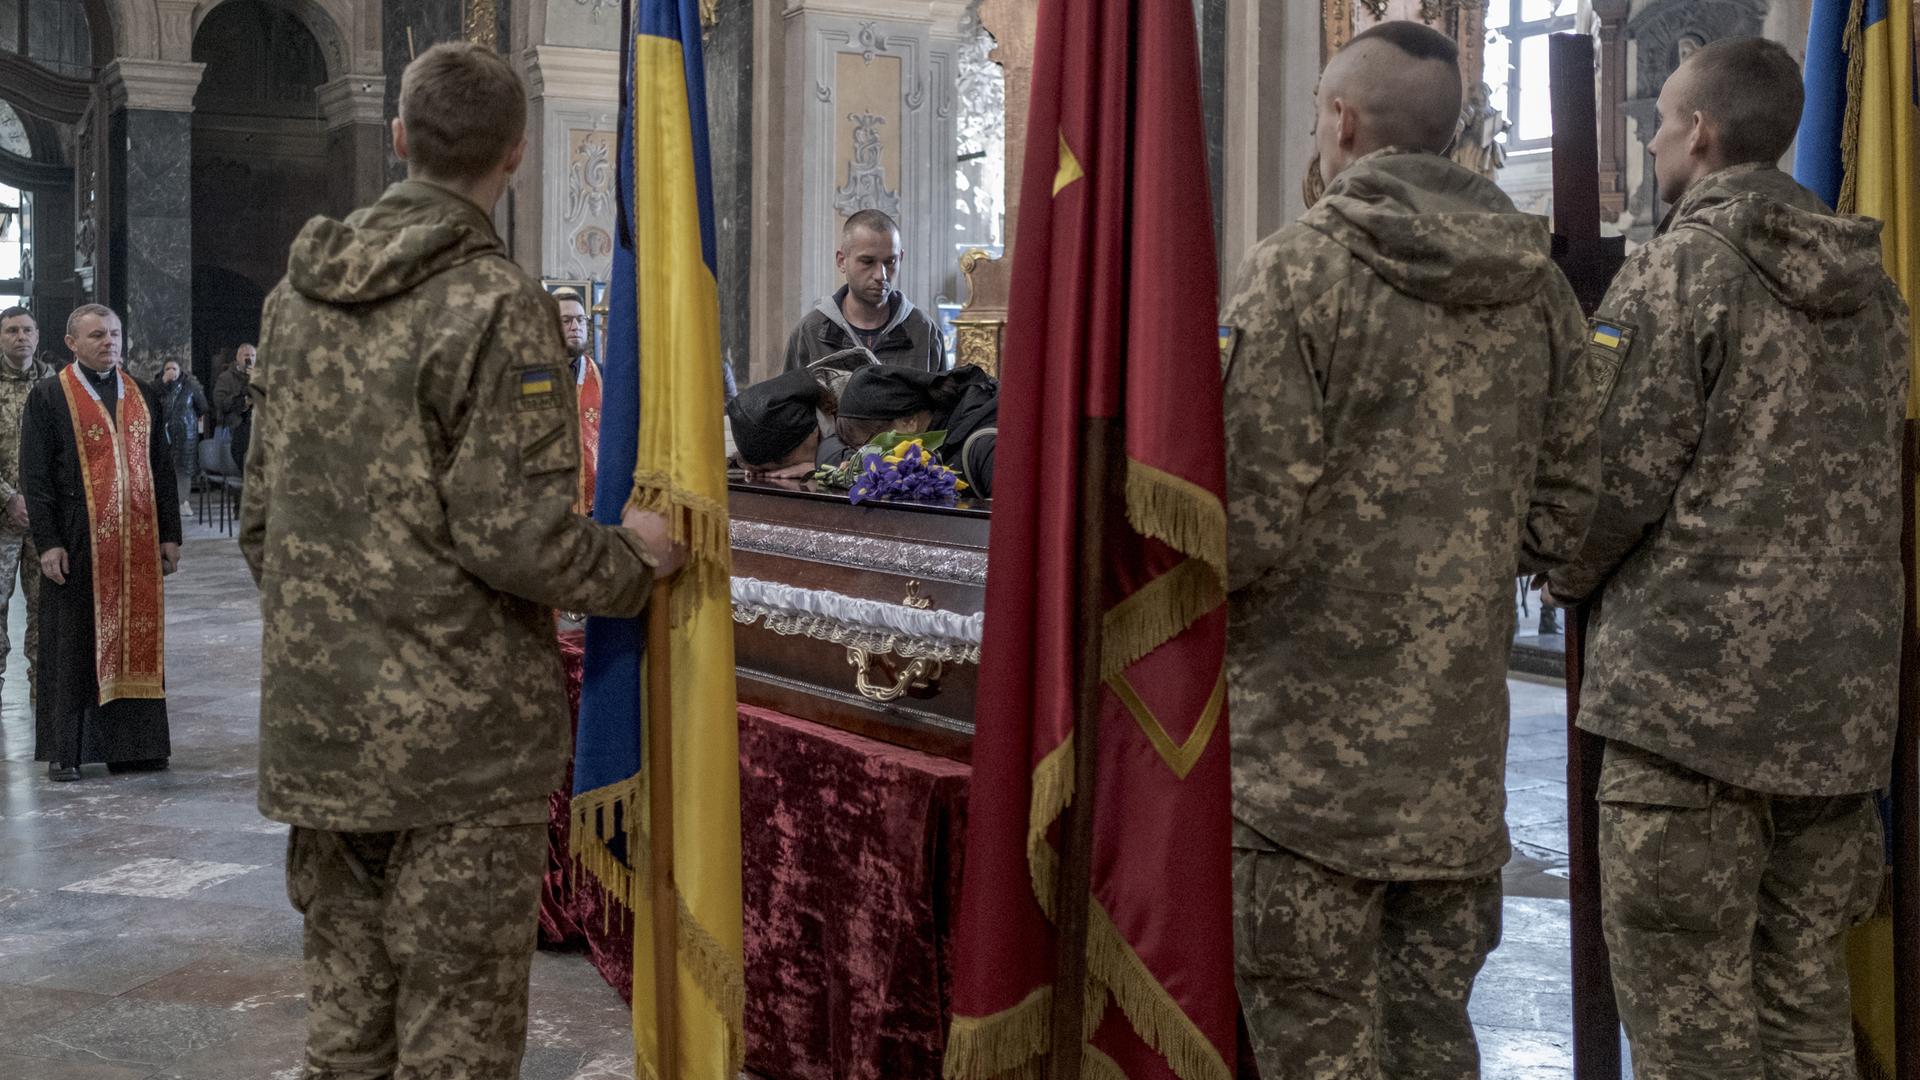 Ukrainische Soldaten bei einer Trauerfeier für einen gefallenen Soldaten in einer Kirche in Lwiw.